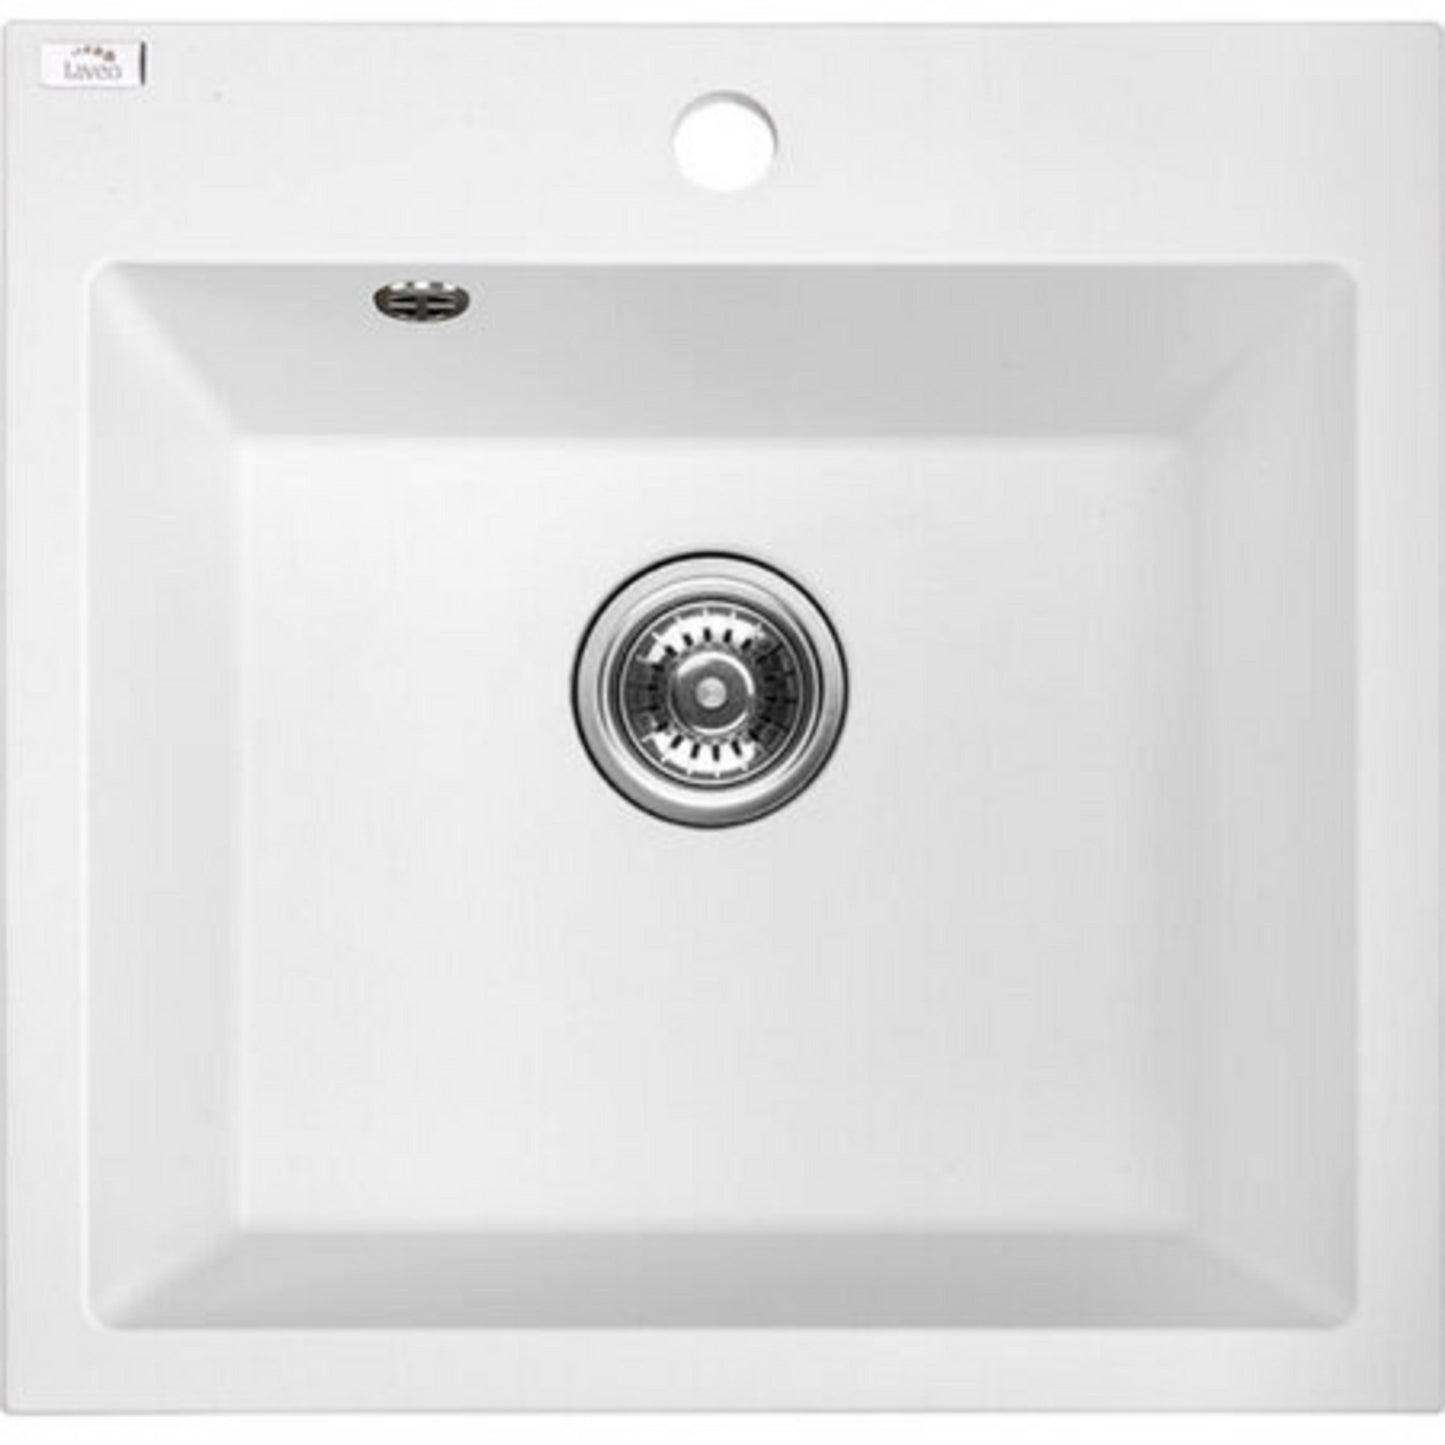 Laveo Alena Granite Sink 1 Bowl - White